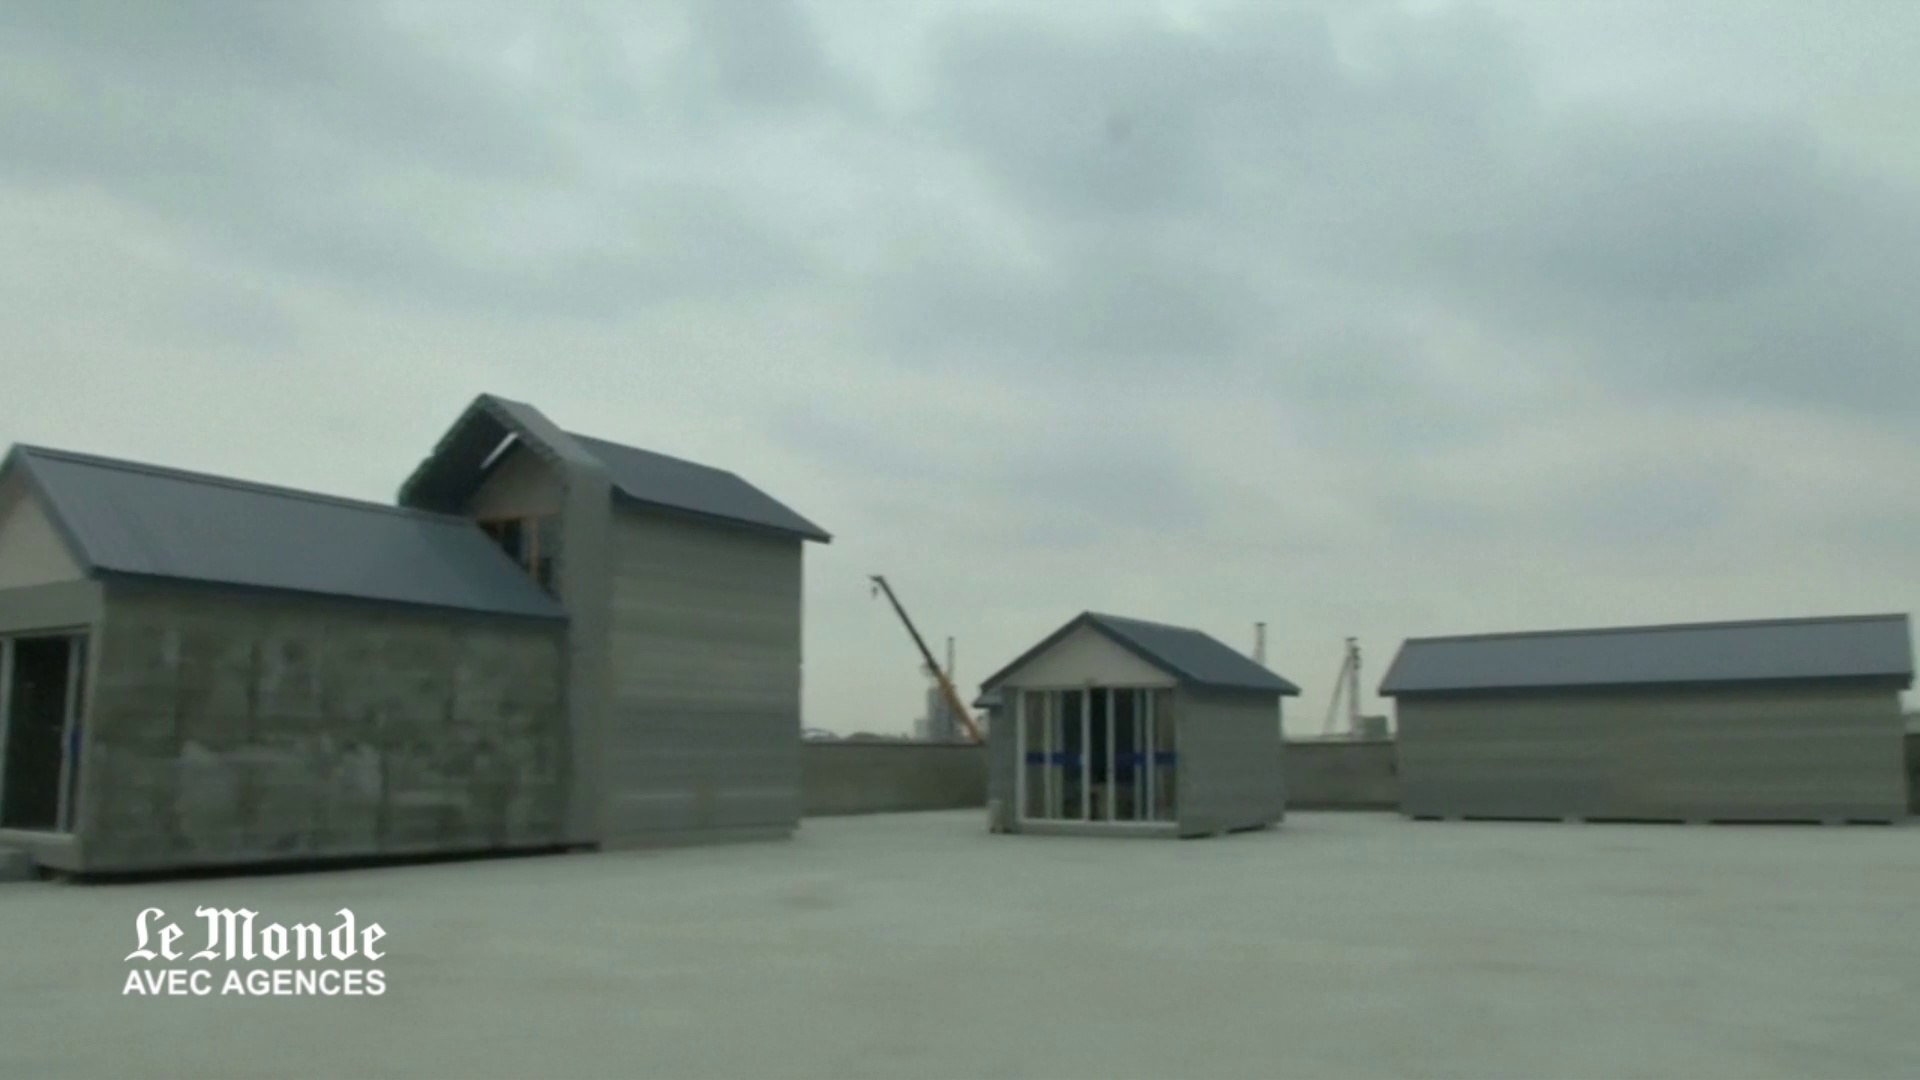 Des maisons chinoises construites avec une imprimante 3D - Vidéo Dailymotion